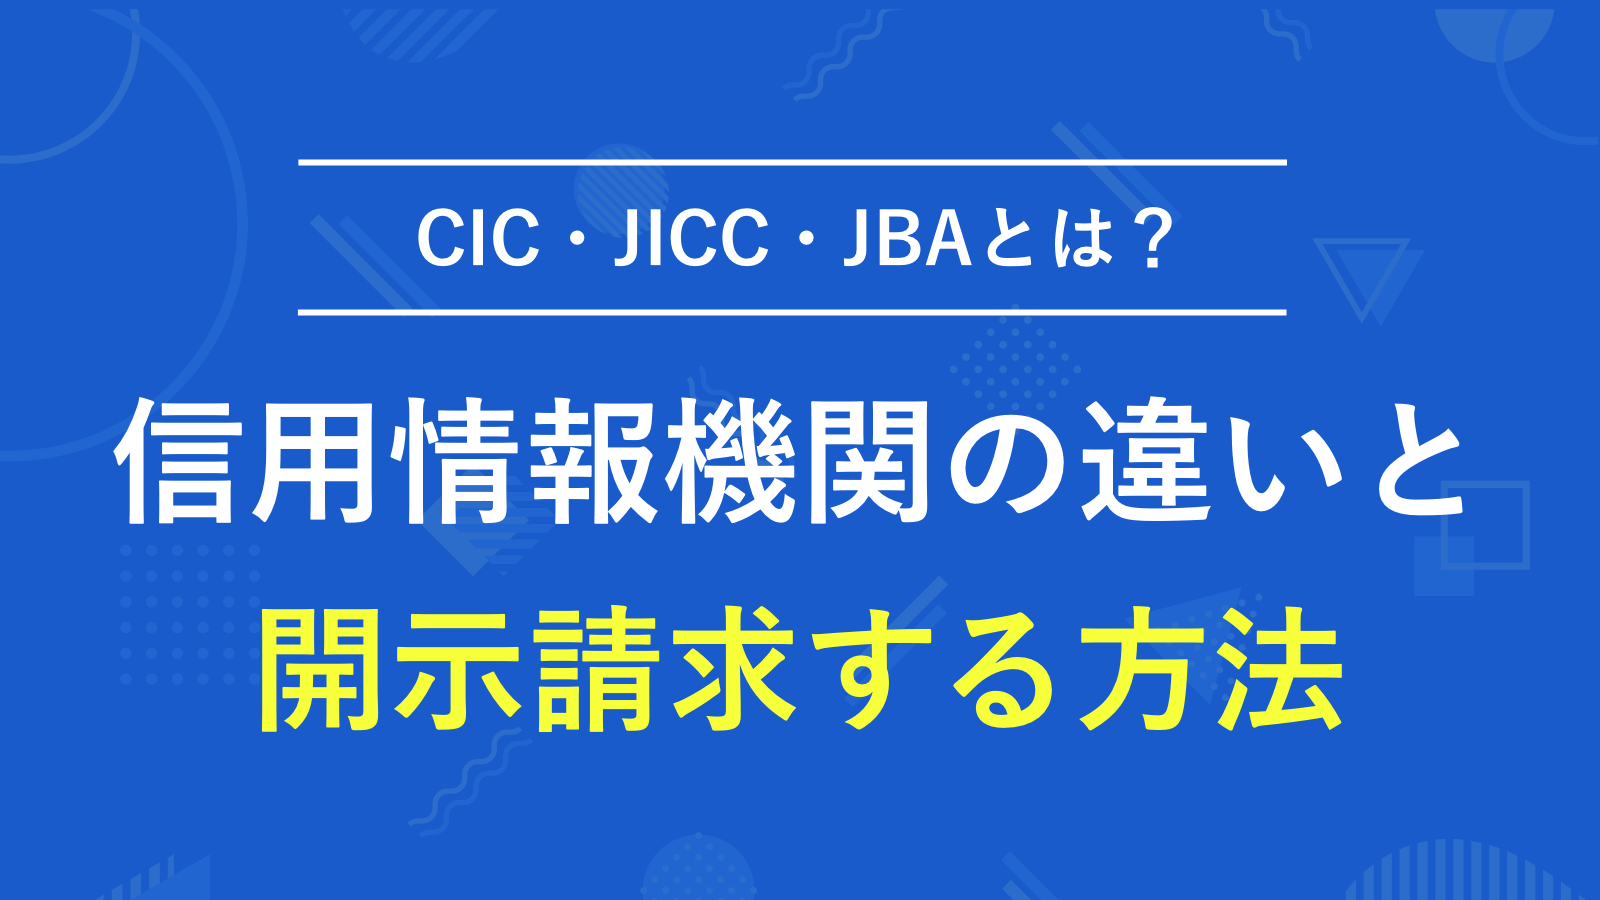 CIC・JICC・JBAといった信用情報機関の違いを解説